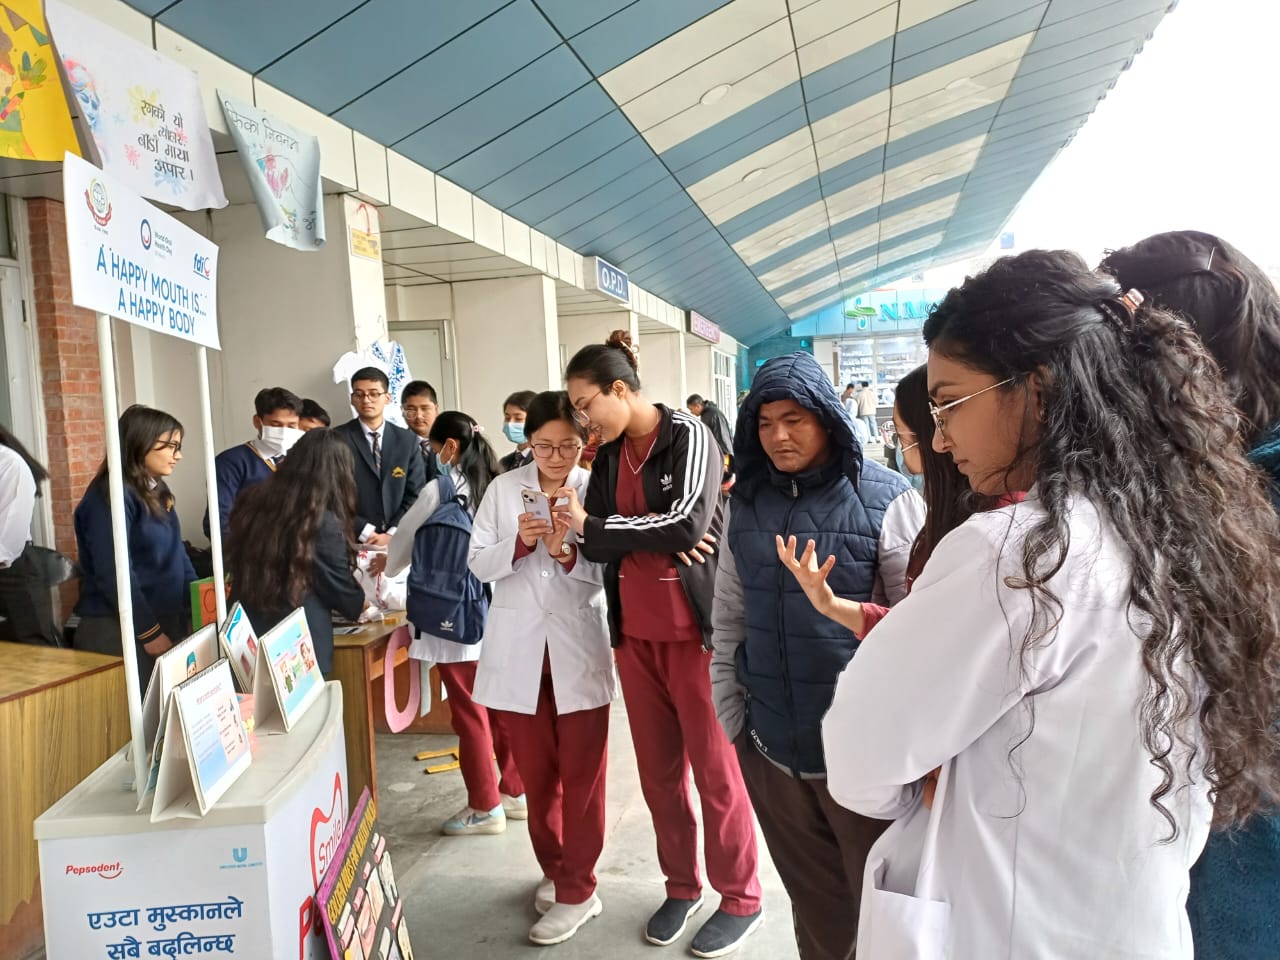 विश्व मुख स्वास्थ्य दिवसको अवसरमा नेपाल मेडिकल कलेजमा सचेतना